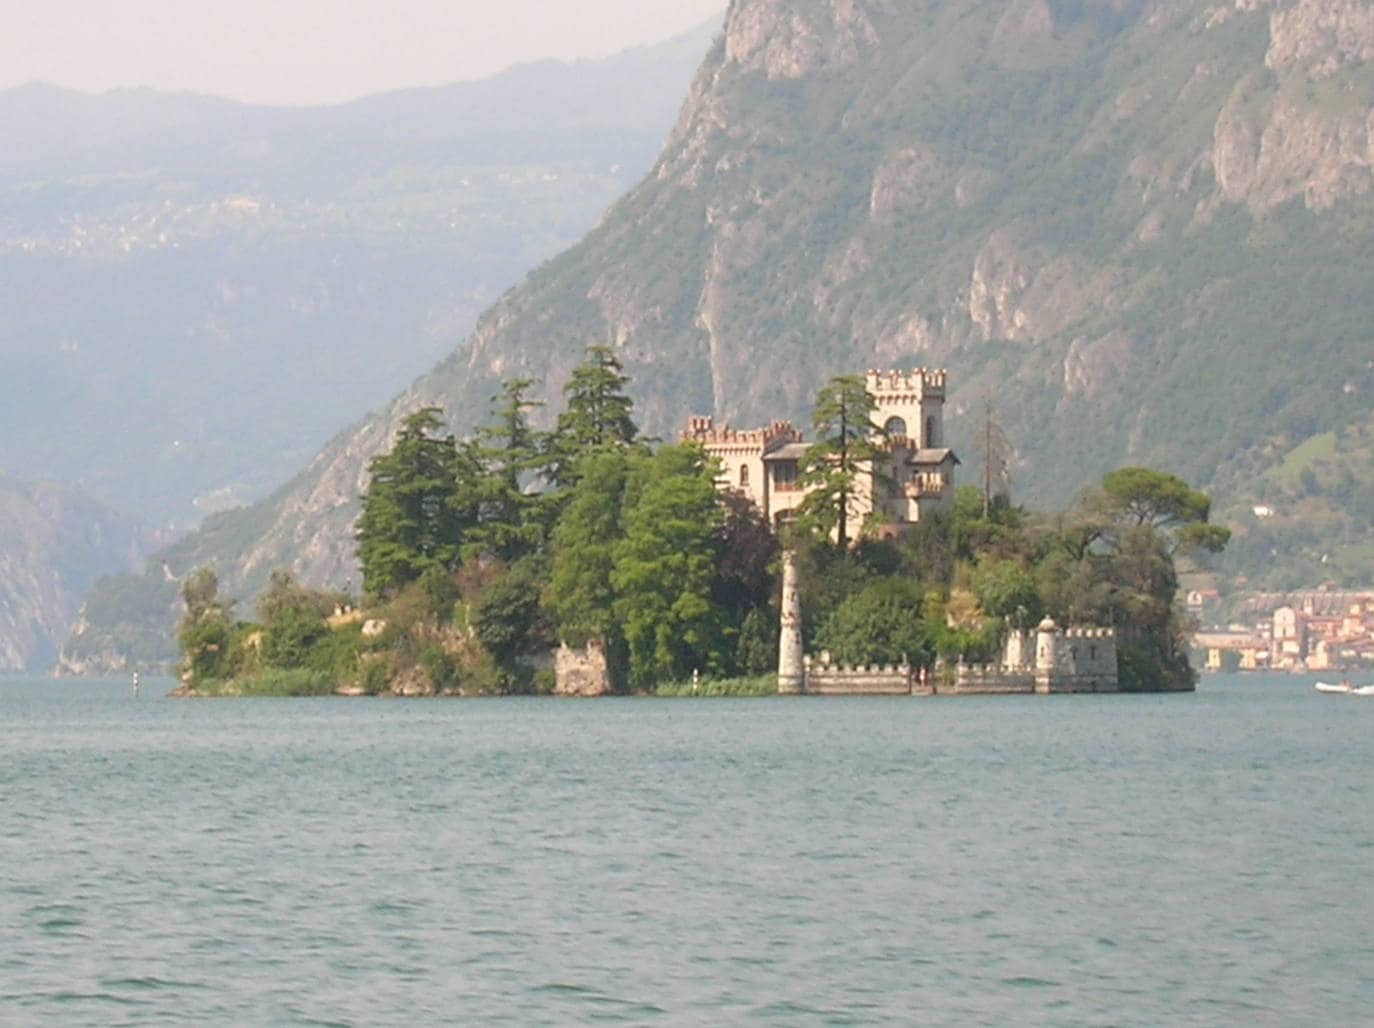 Lago Iseo (Lombardía), 340 046 menciones. A unos 80 km de Milán, entre las provincias de Bérgamo y Brescia. Además de refrescarse en sus playas, los visitantes pueden explorar un sinfín de localidades costeras encantadoras, como por ejemplo Lovere, incluido en la lista de «I borghi più belli d’Italia». Situado en medio del lago, la enorme isla Monte Isola, en cuyo perfil se distinguen claramente la Rocca de Martinengo (una fortaleza del siglo XIV) y el santuario de la Madonna della Ceriola, es otra parada imprescindible. En la foto, la Isla de Loreto.